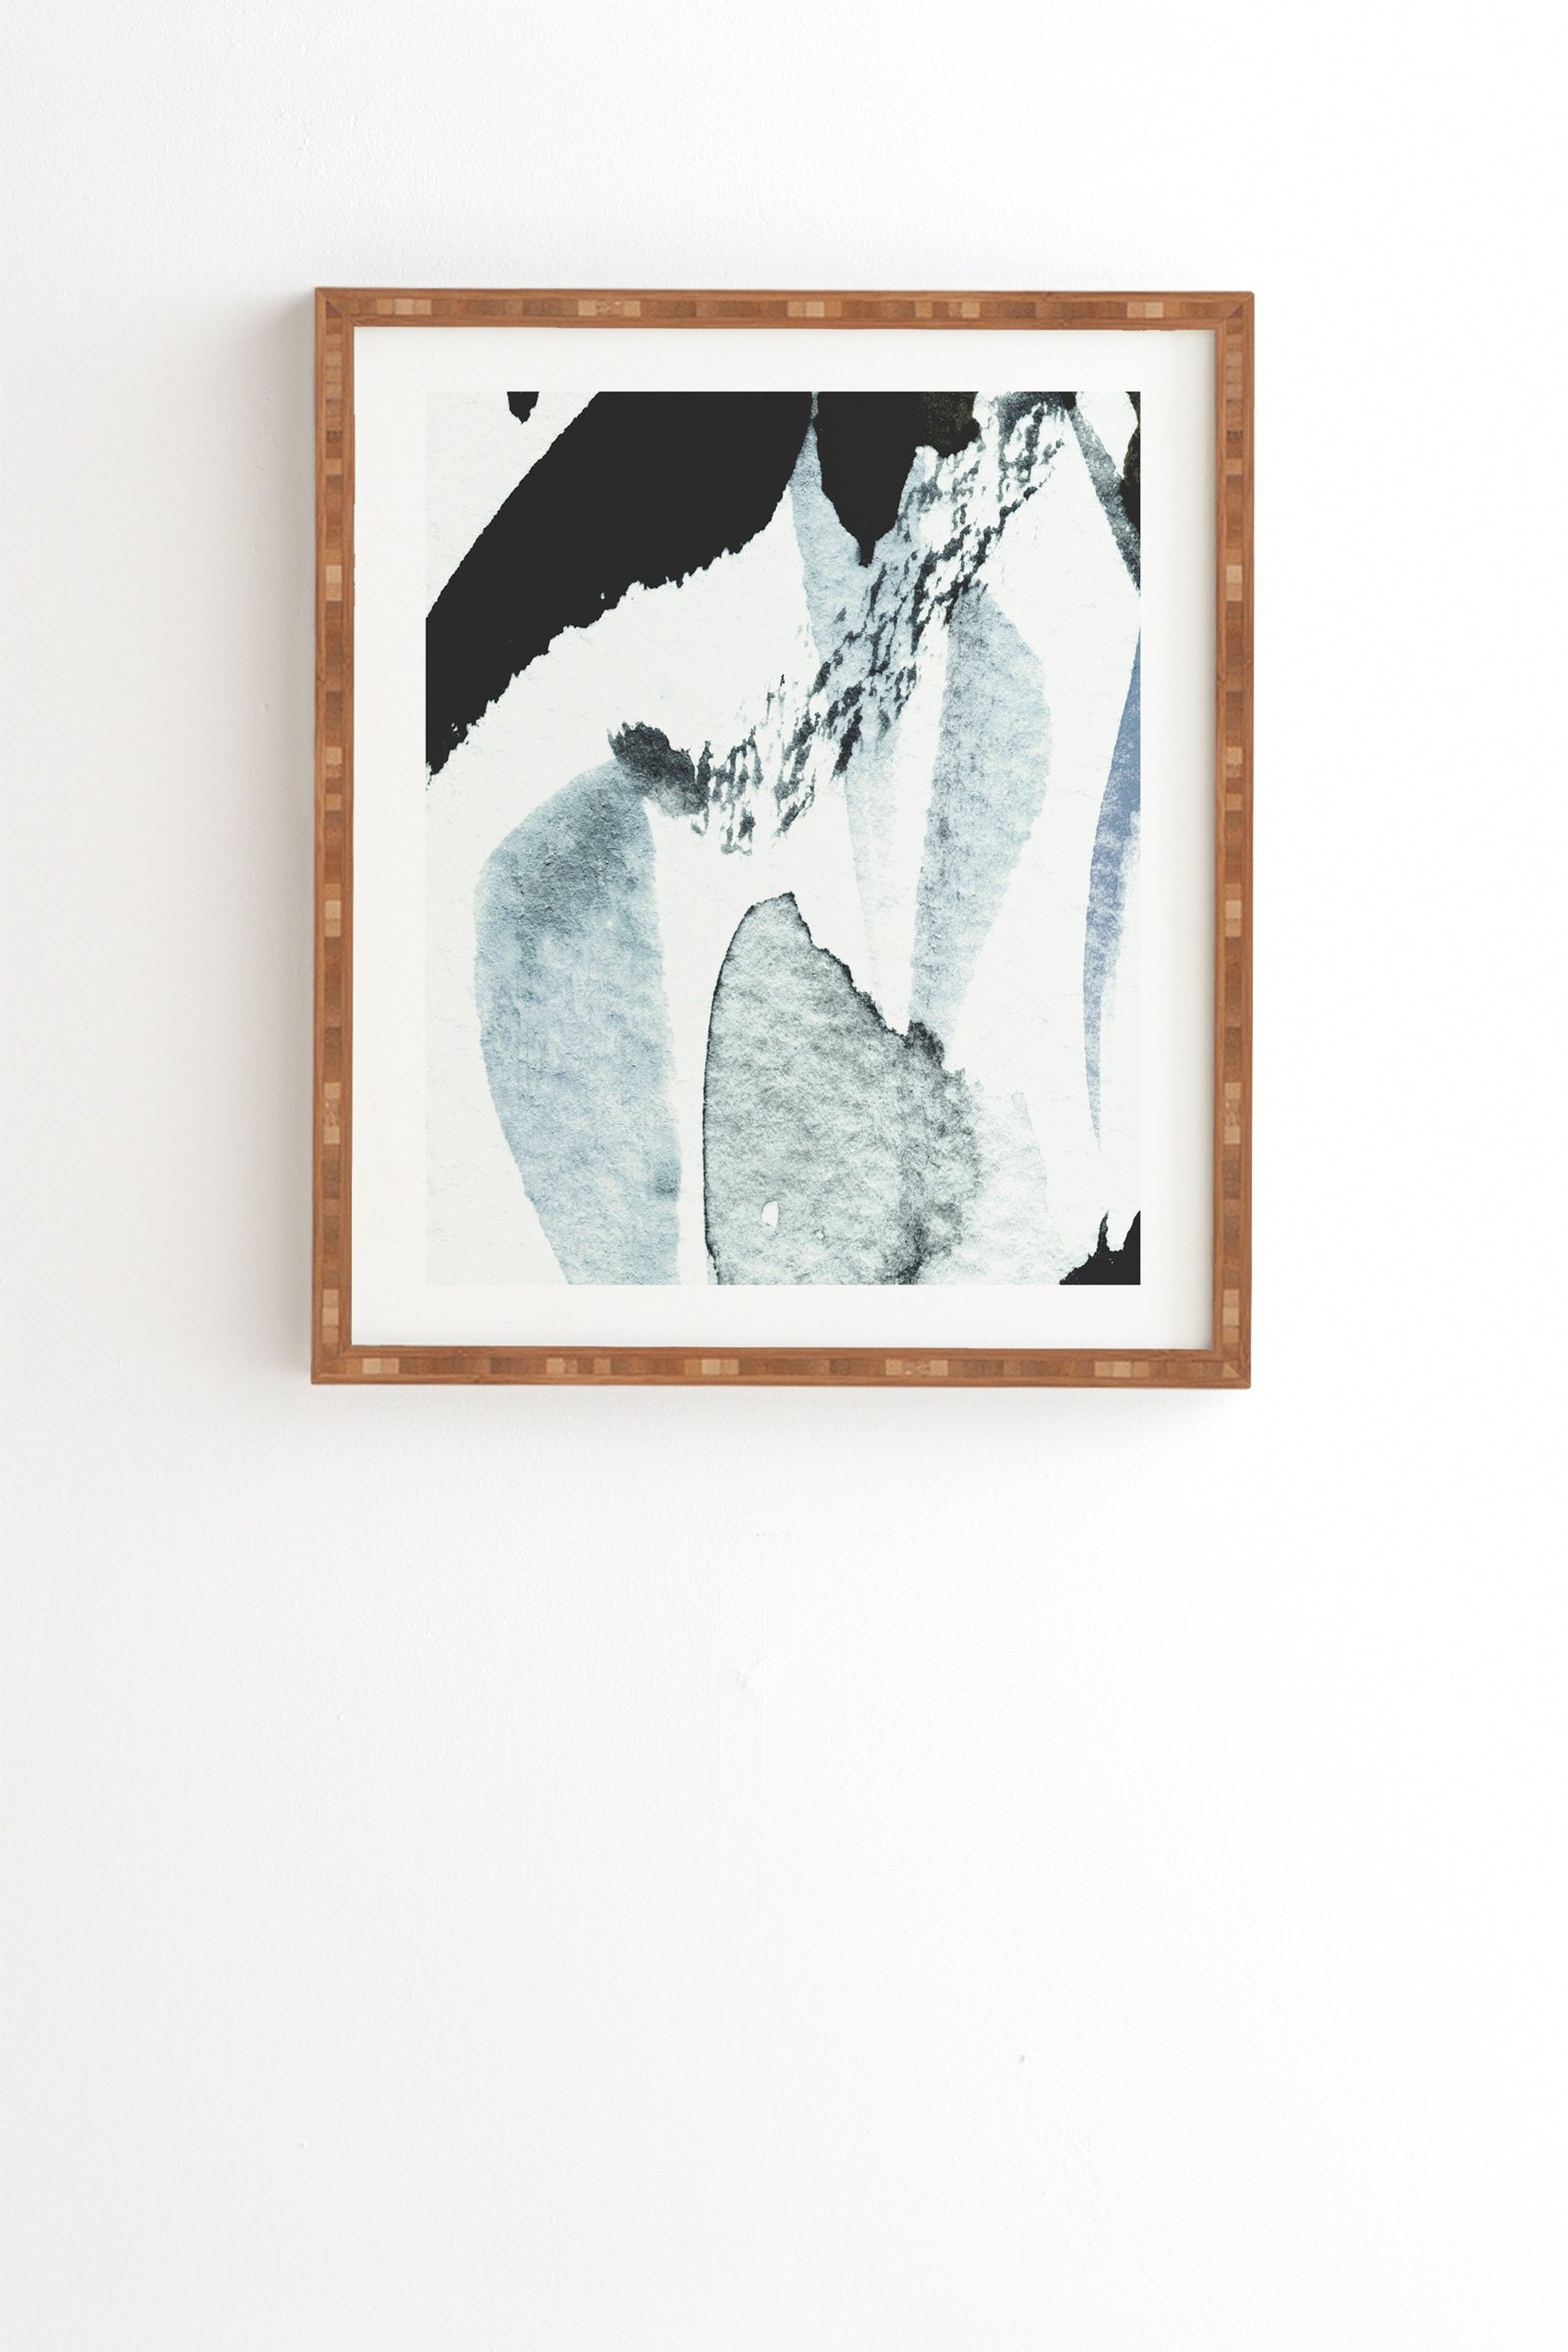 ABSTRACTM5 Wall Art - 19" x 22.4" - Natural Bamboo Frame - Wander Print Co.